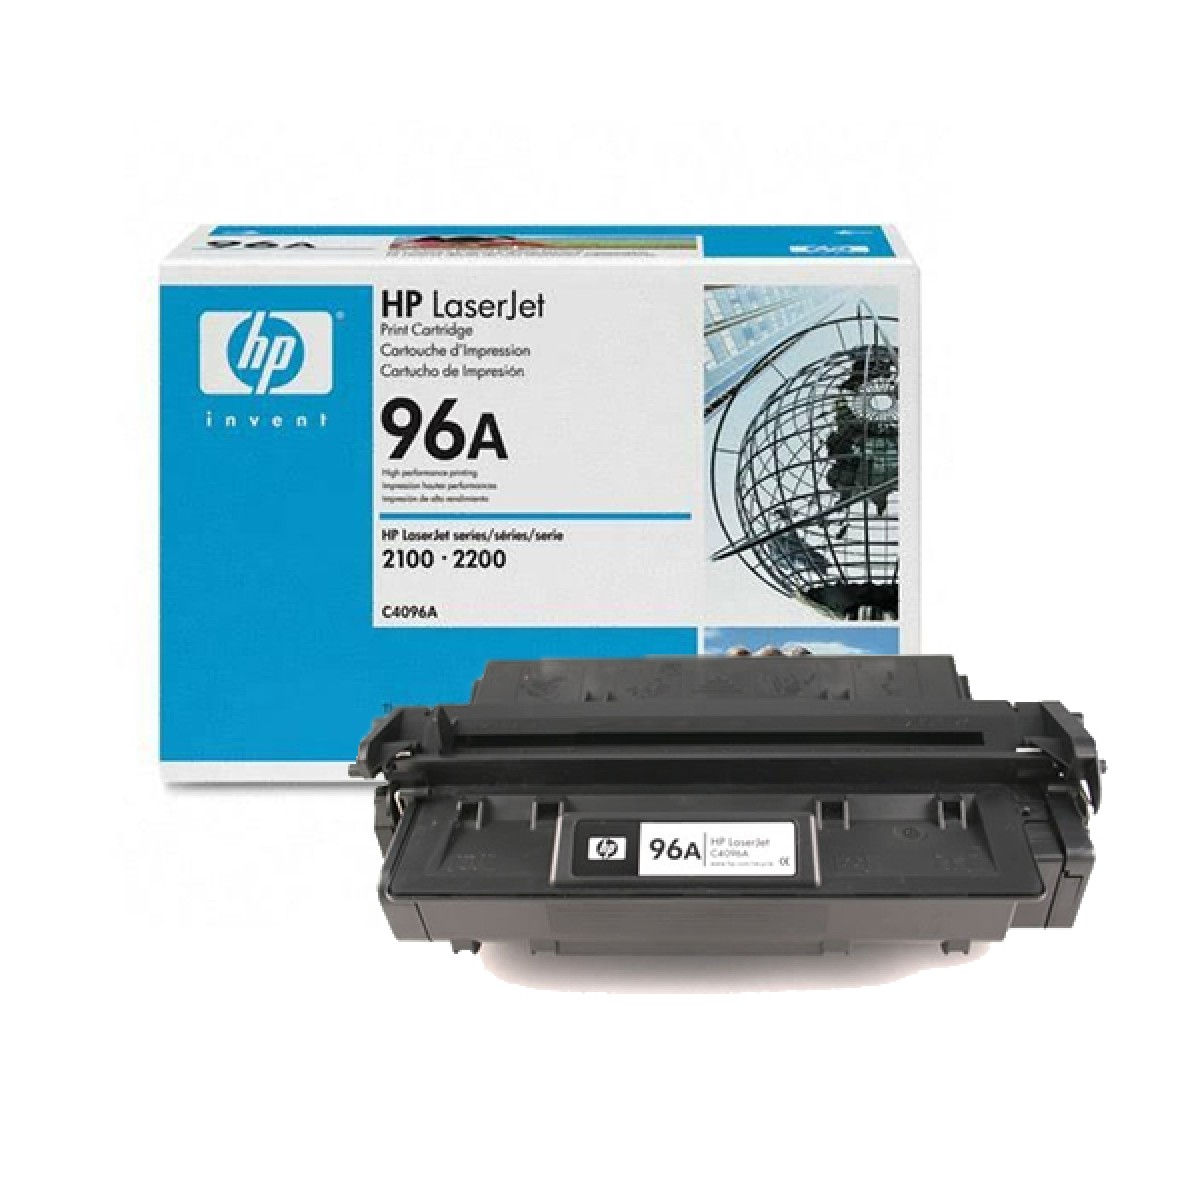 Заправка картриджа HP C4096A для LaserJet 2100, 2200